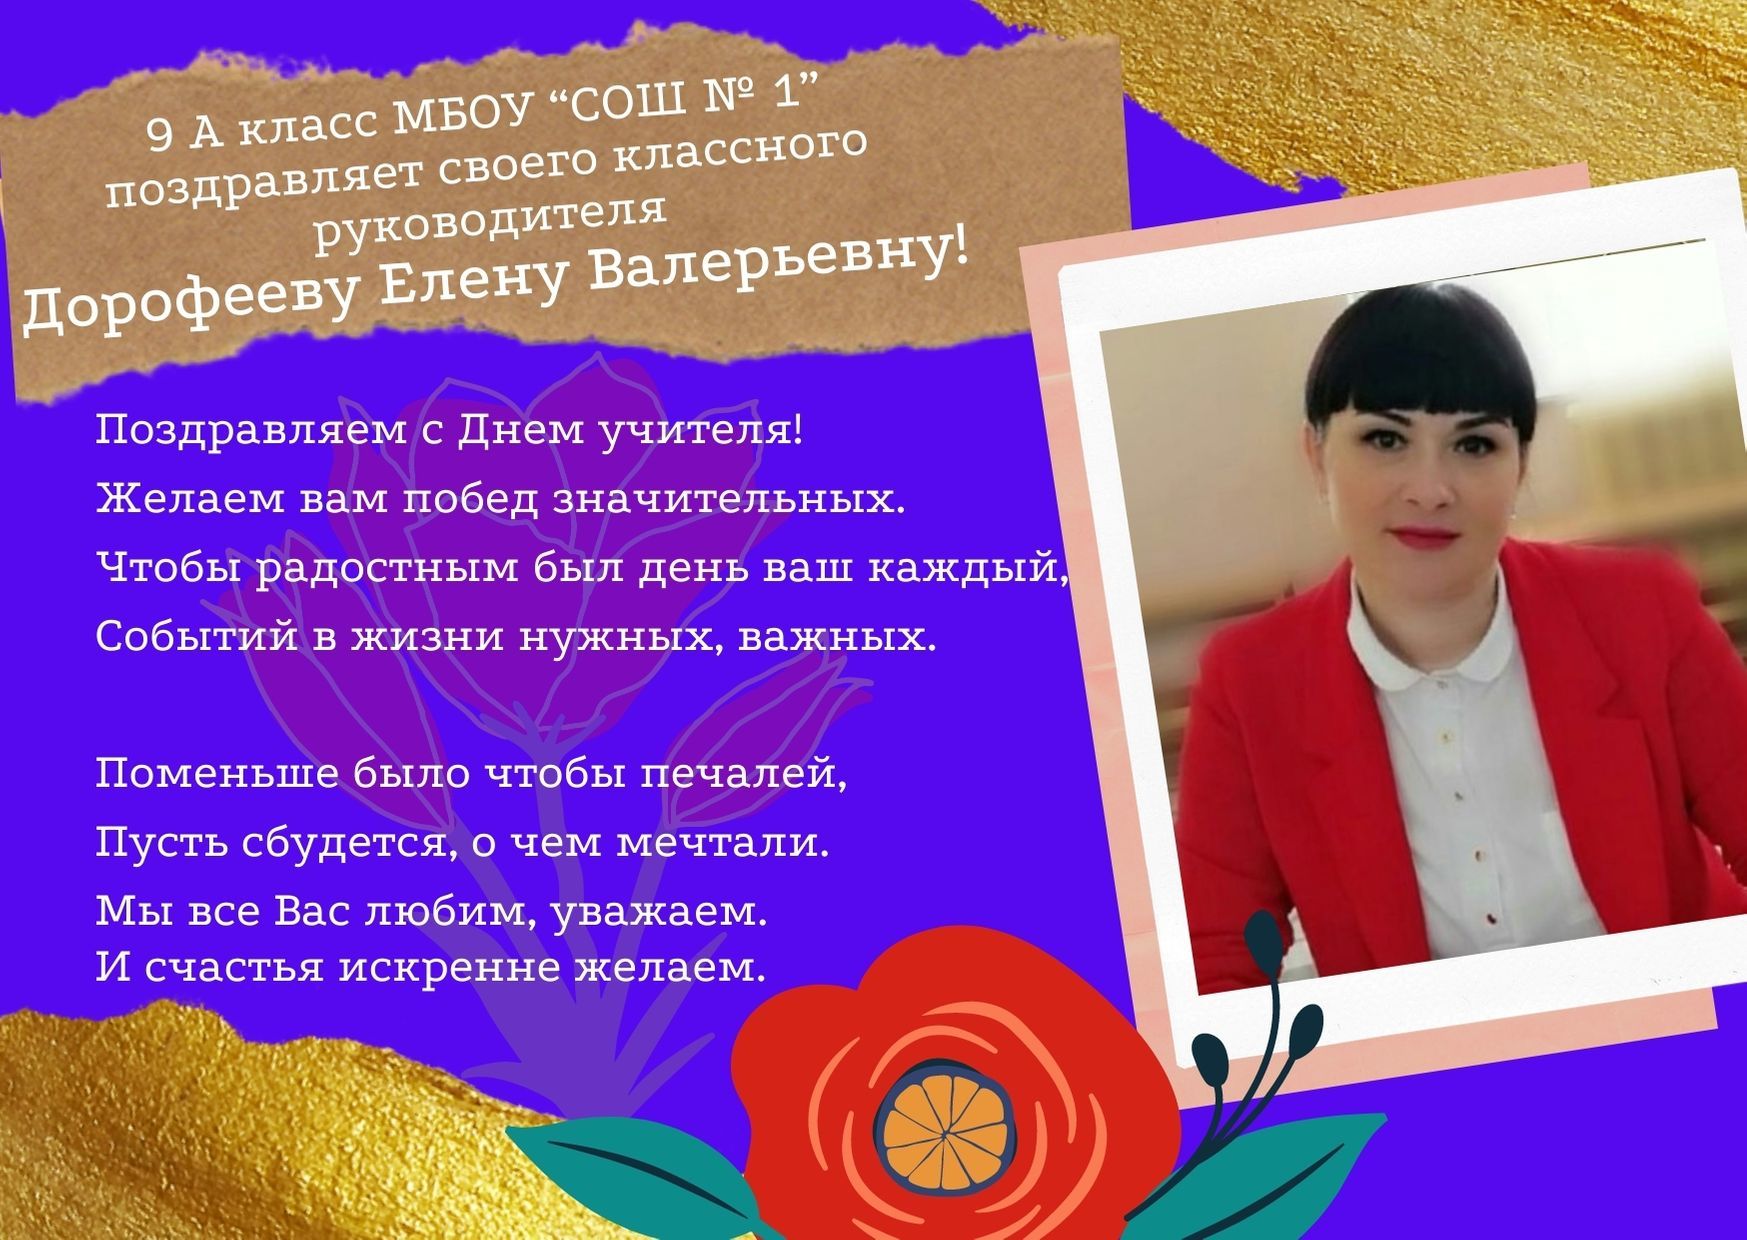 С Днем учителя Дорофееву Елену Валерьевну!